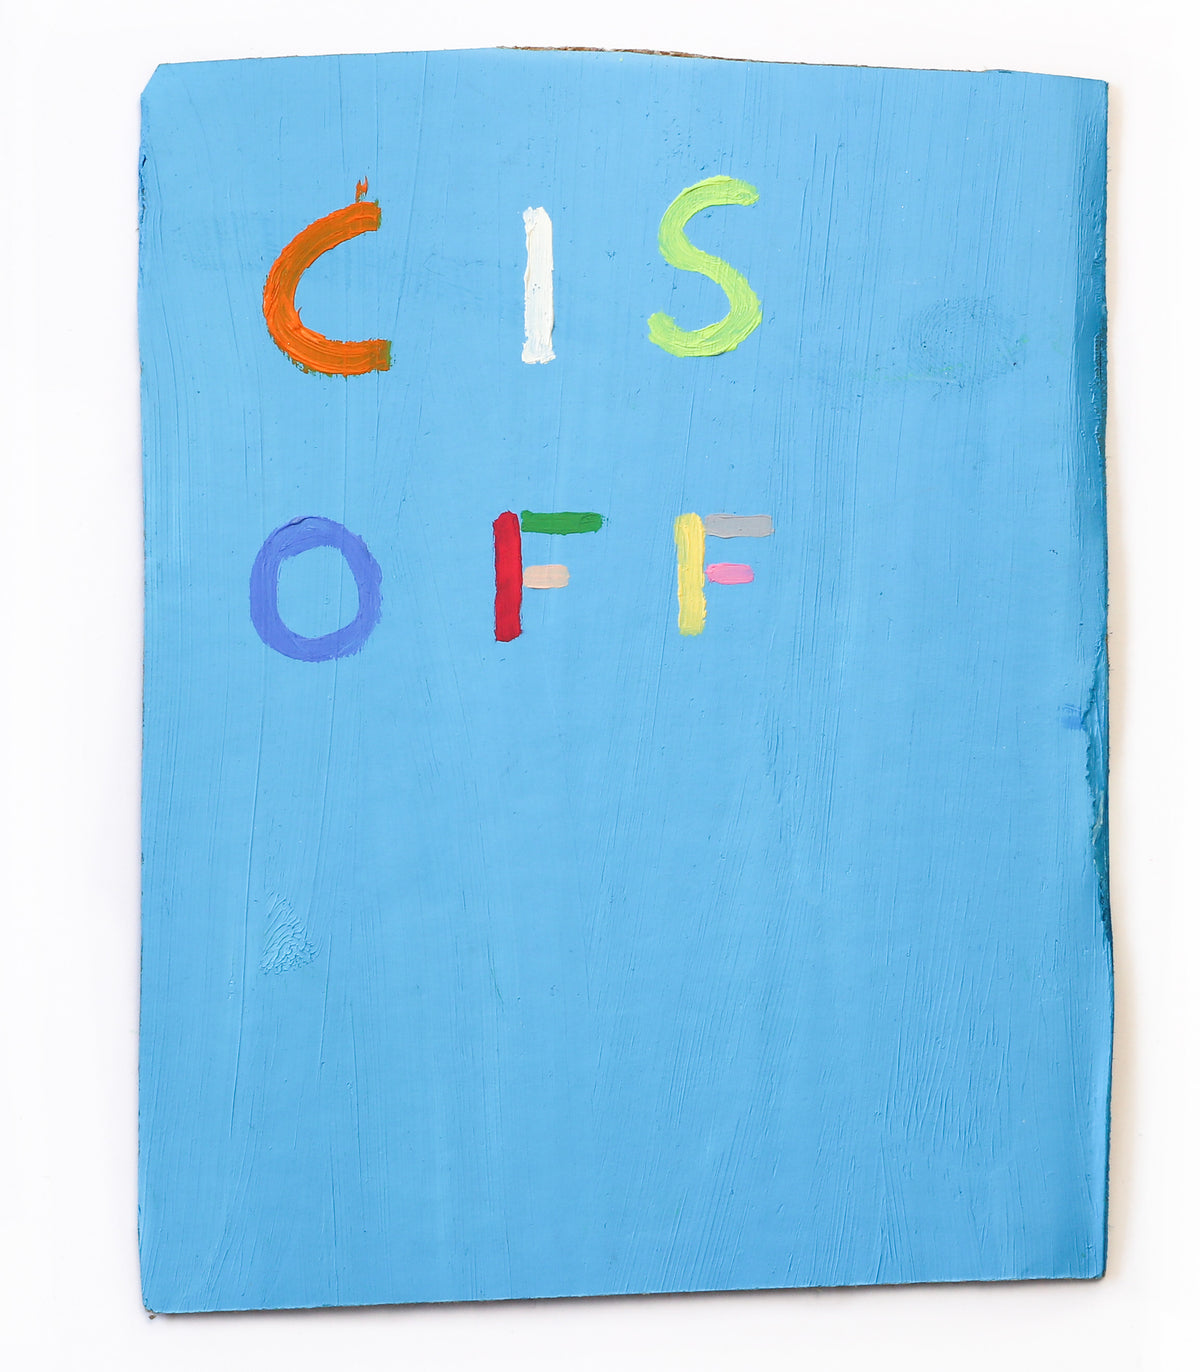 James Hale | Cis Off (blue)